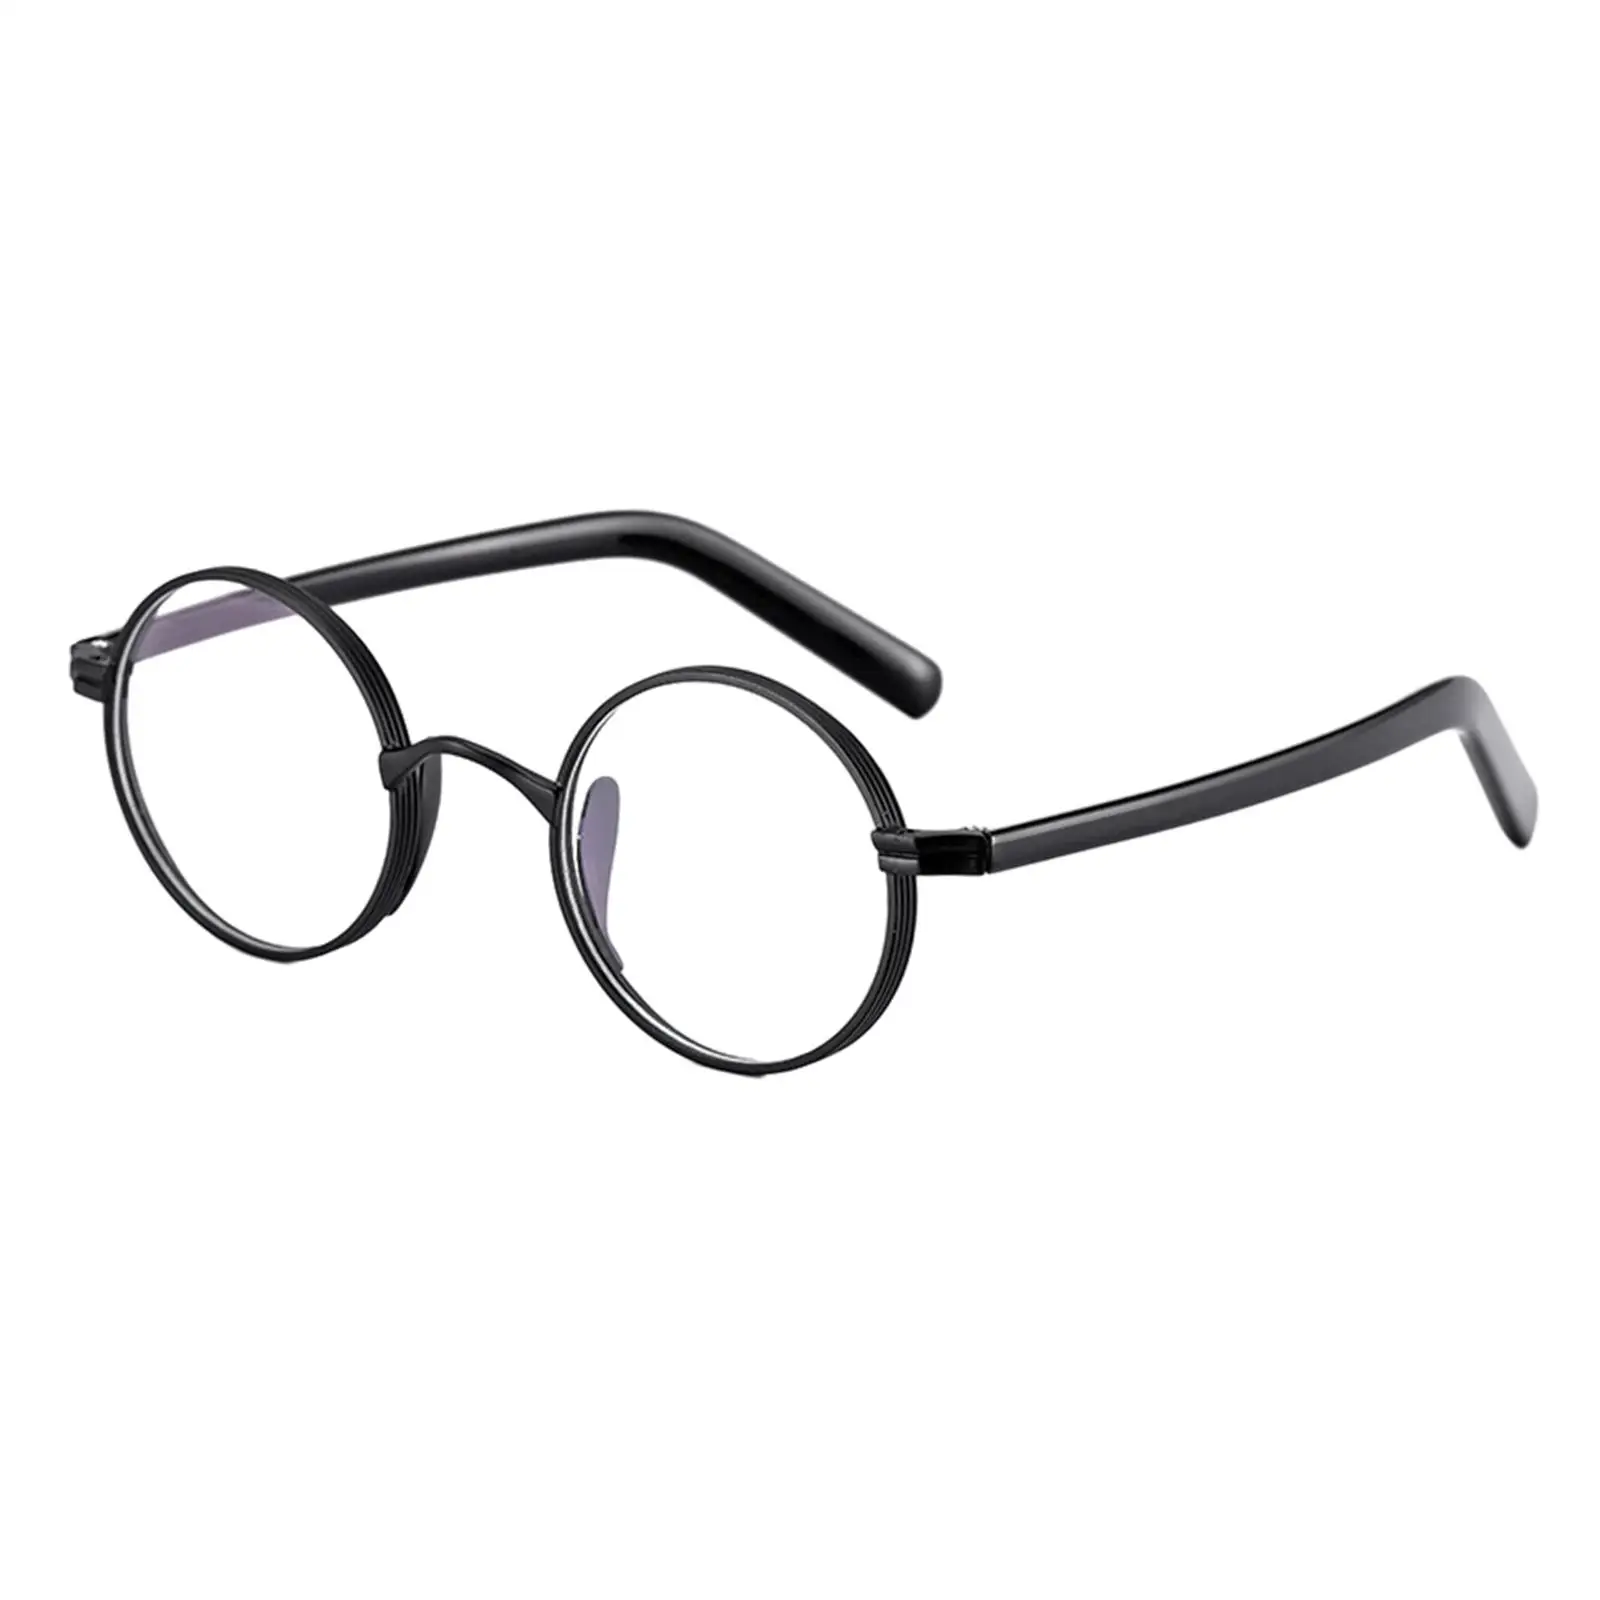 Glasses Frames Ultralight for Women Men Retro Round Full Rim Oval Oversized Eyeglasses Frames Titanium Alloy Eyeglass Frame